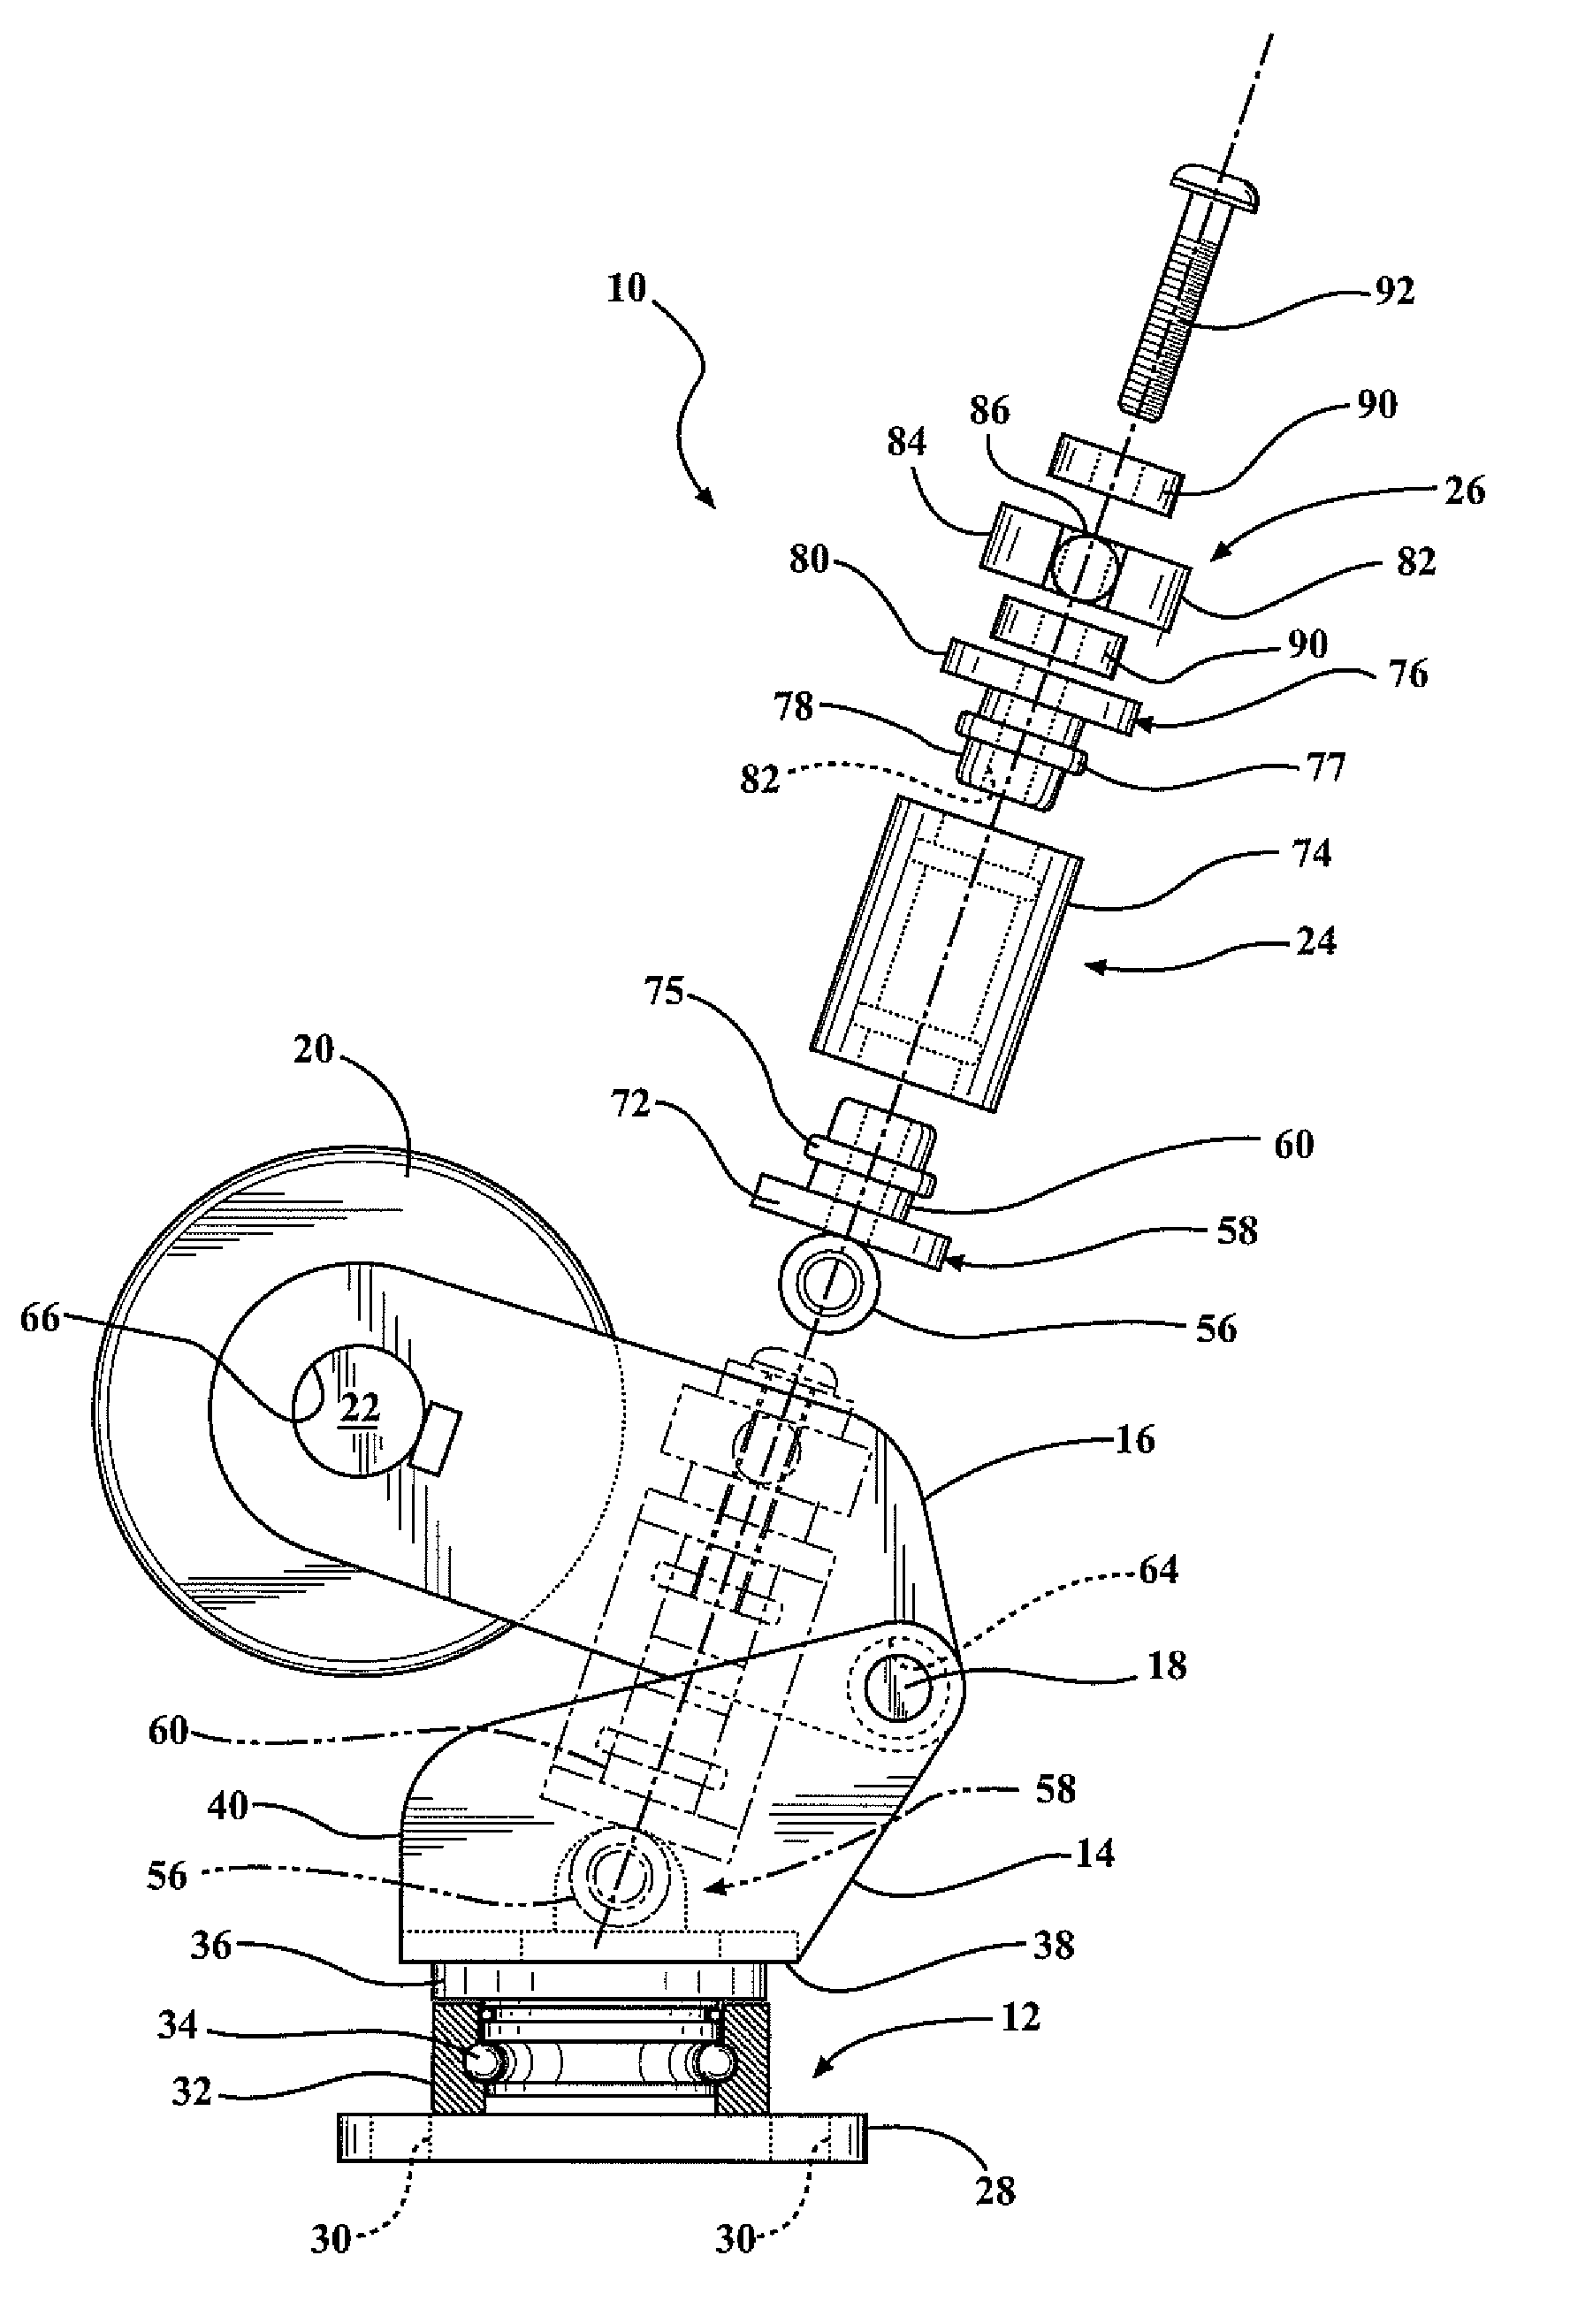 Vertically adjustable caster wheel apparatus